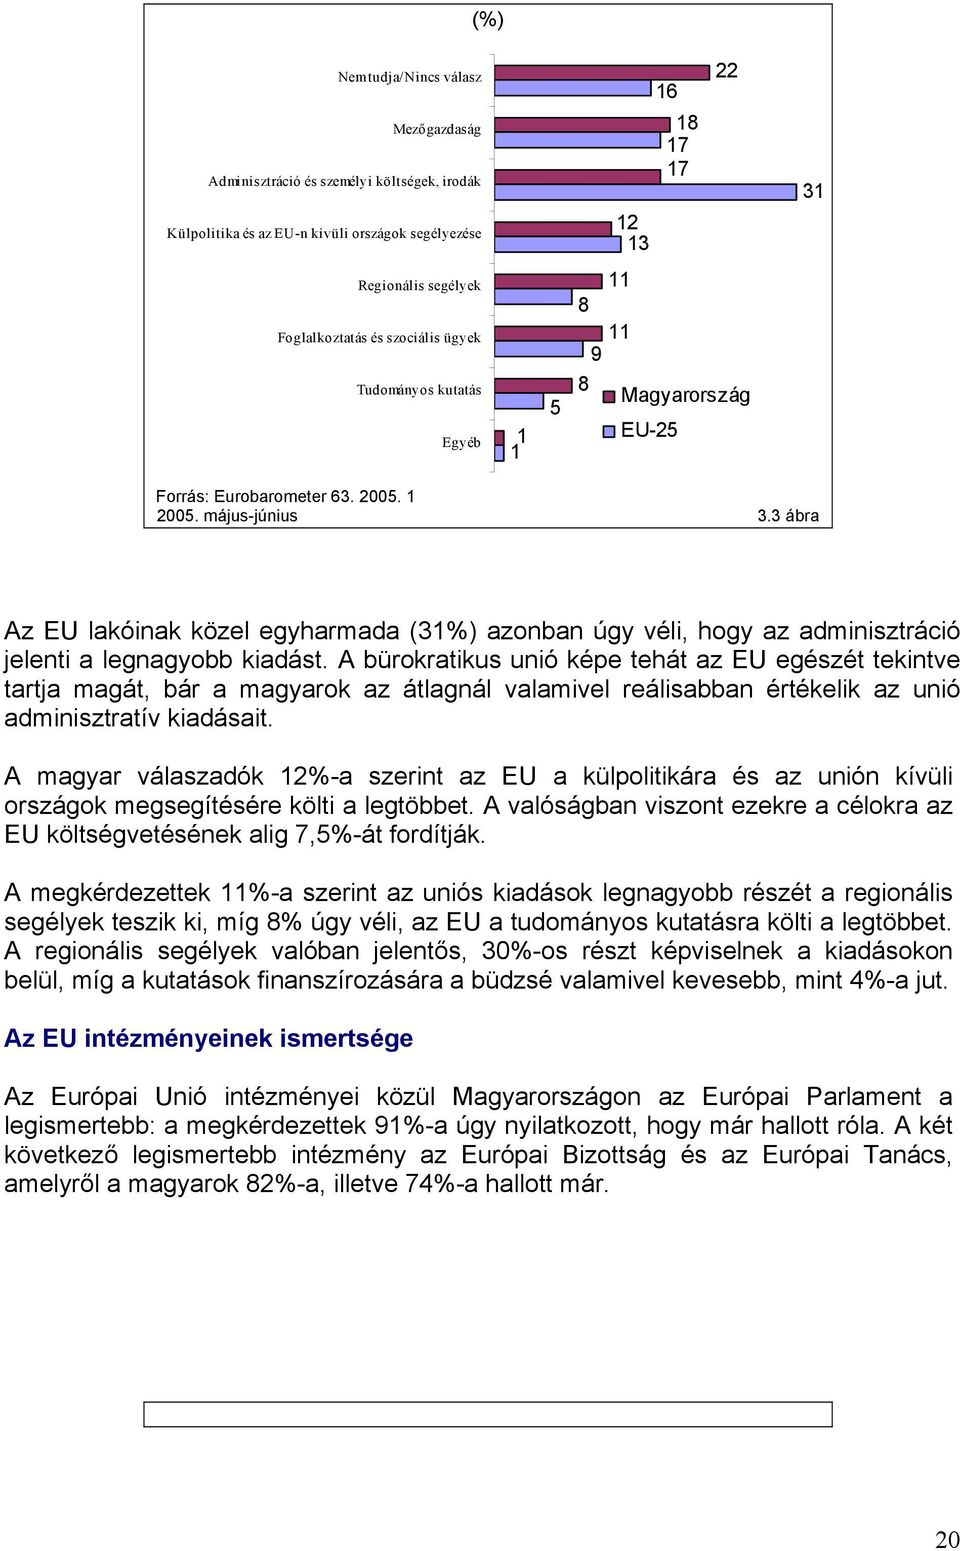 3 ábra Az EU lakóinak közel egyharmada (31%) azonban úgy véli, hogy az adminisztráció jelenti a legnagyobb kiadást.